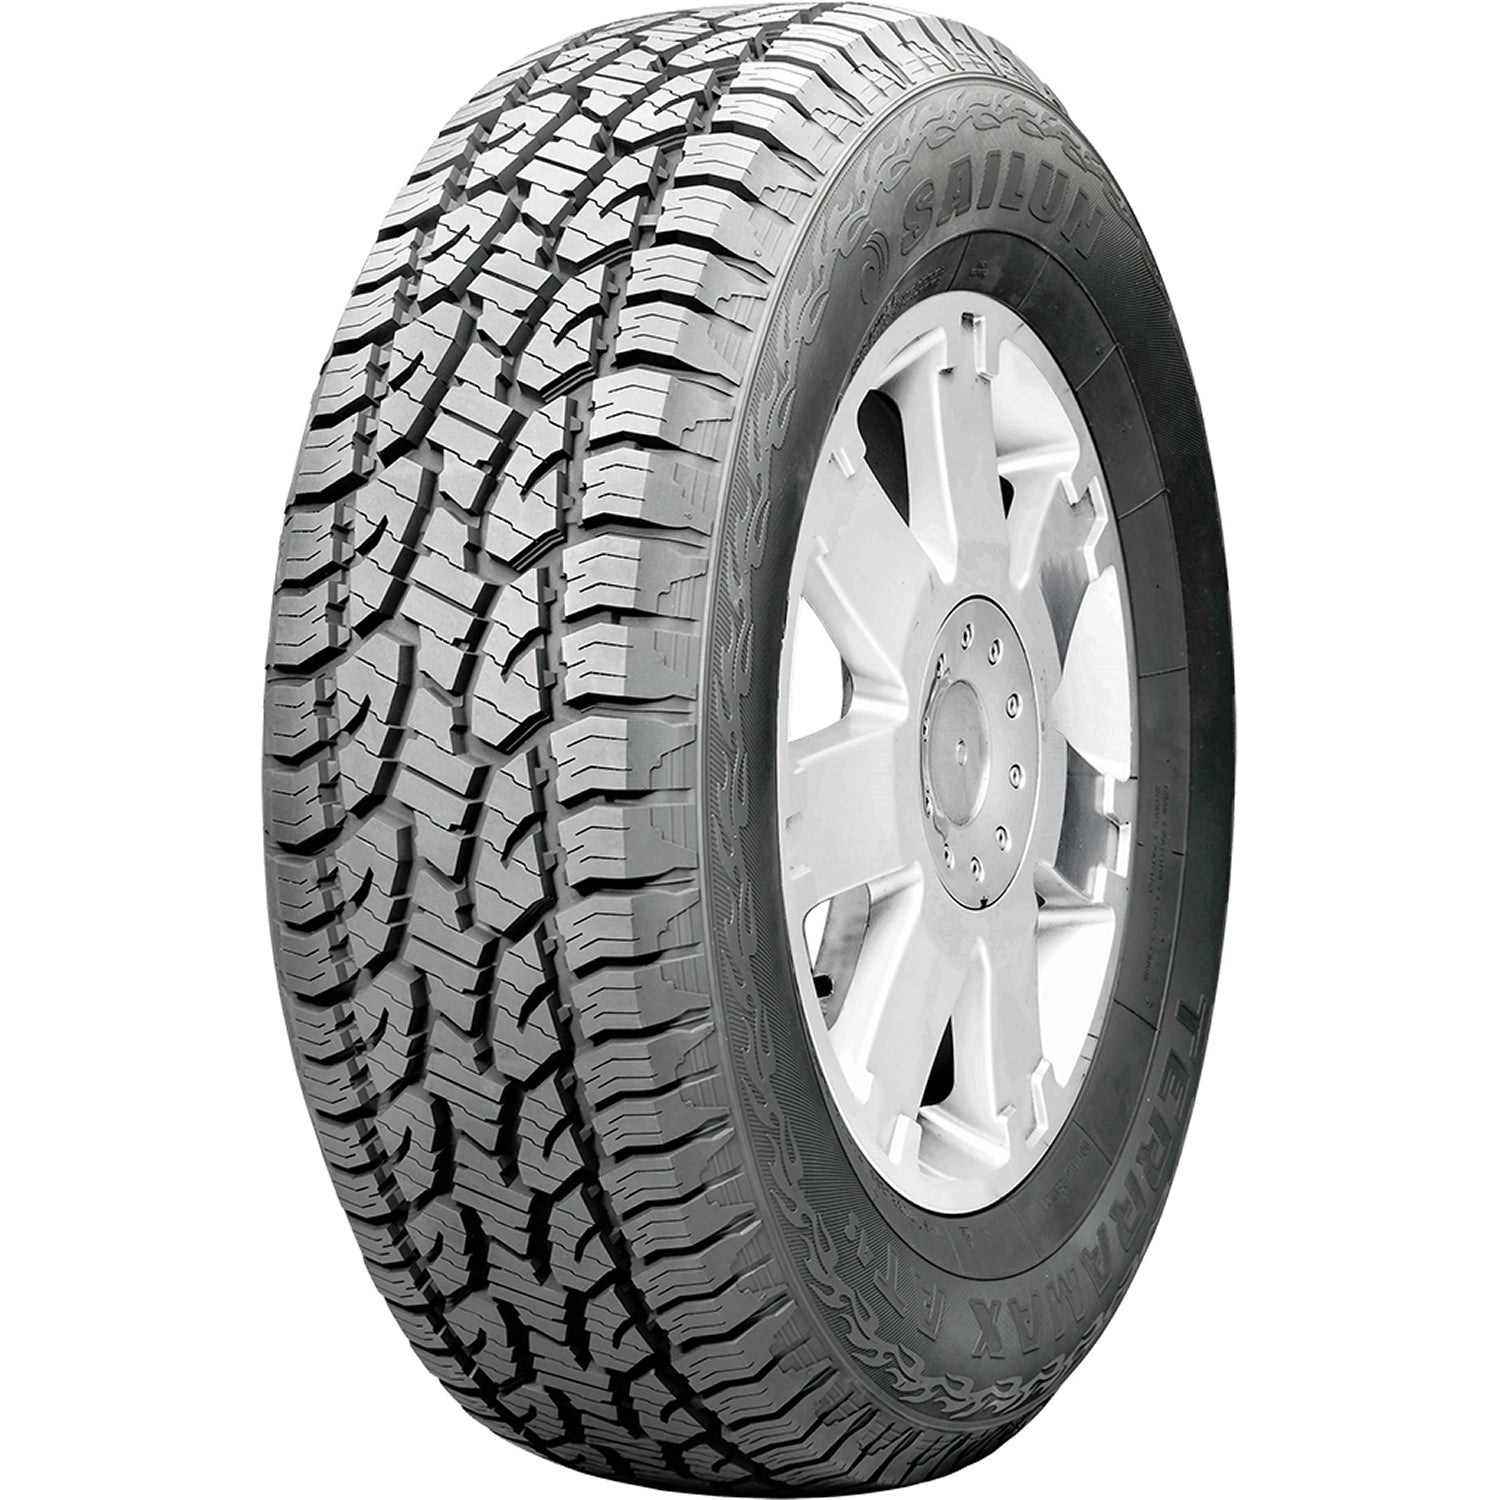 SAILUN TERRAMAX AT 4S 245/75R16 (30.5X9.8R 16) Tires